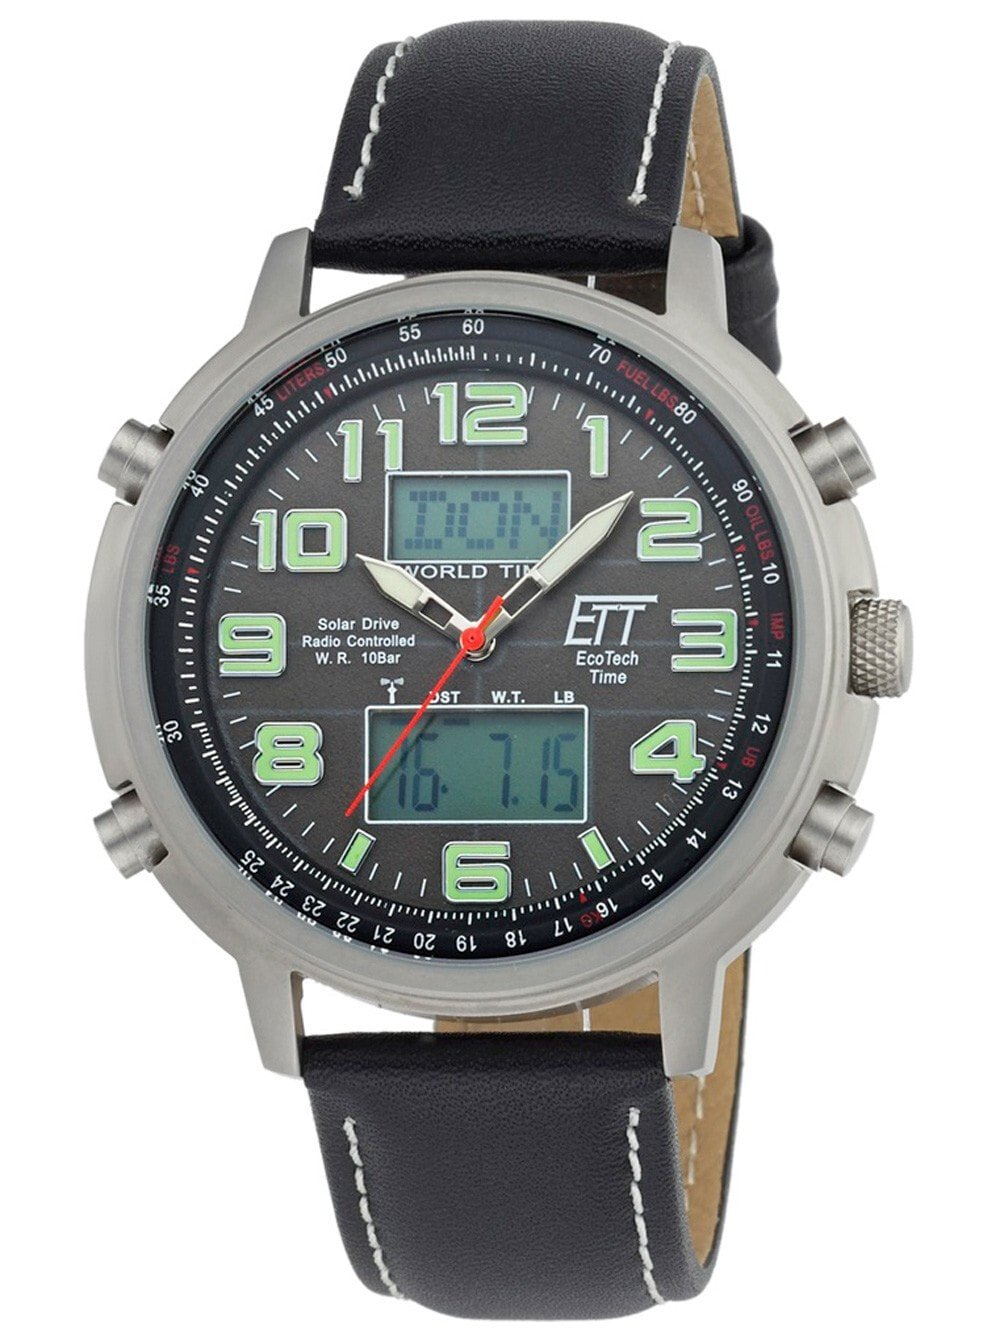 Мужские наручные часы с черным кожаным ремешком ETT EGS-11301-22L Solar Drive Radio Controlled Hunter II Chrono 48mm 10ATM